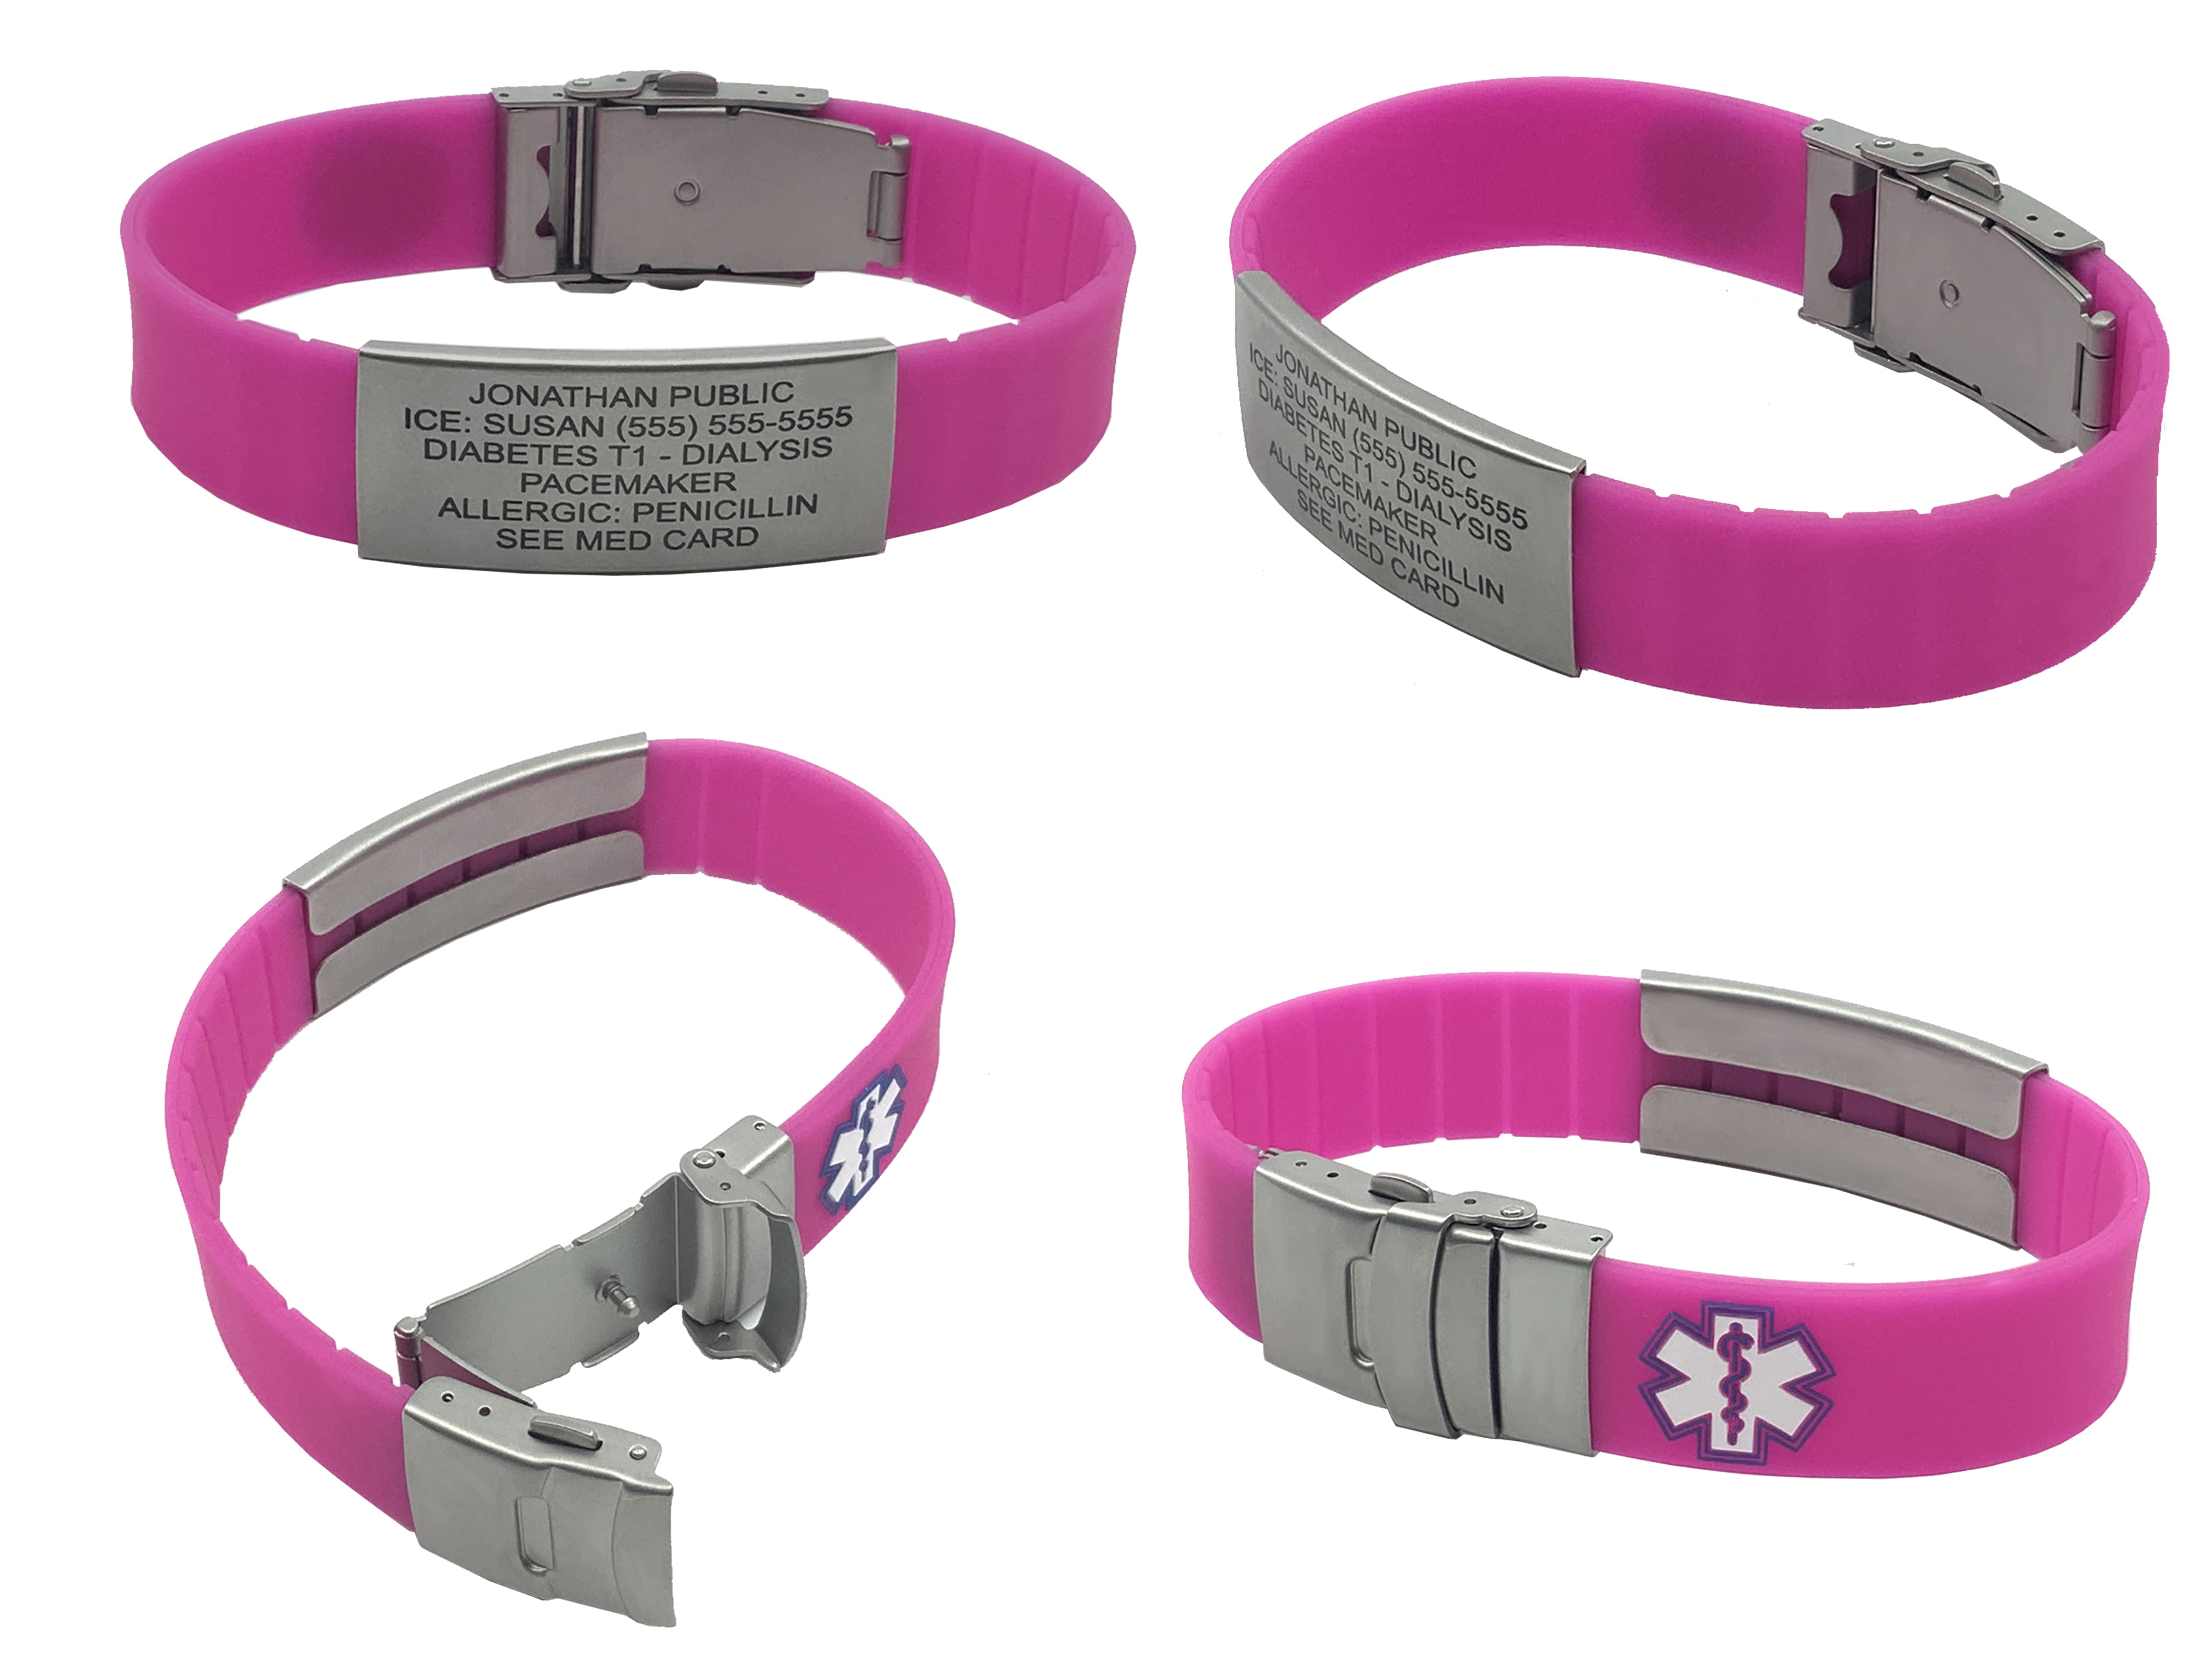 Personalized Bracelet Silicone Medical Bracelet Sport Emergency ID Bracelet for Men Women Kids Free Engraving Waterproof ID Alert Bracelets